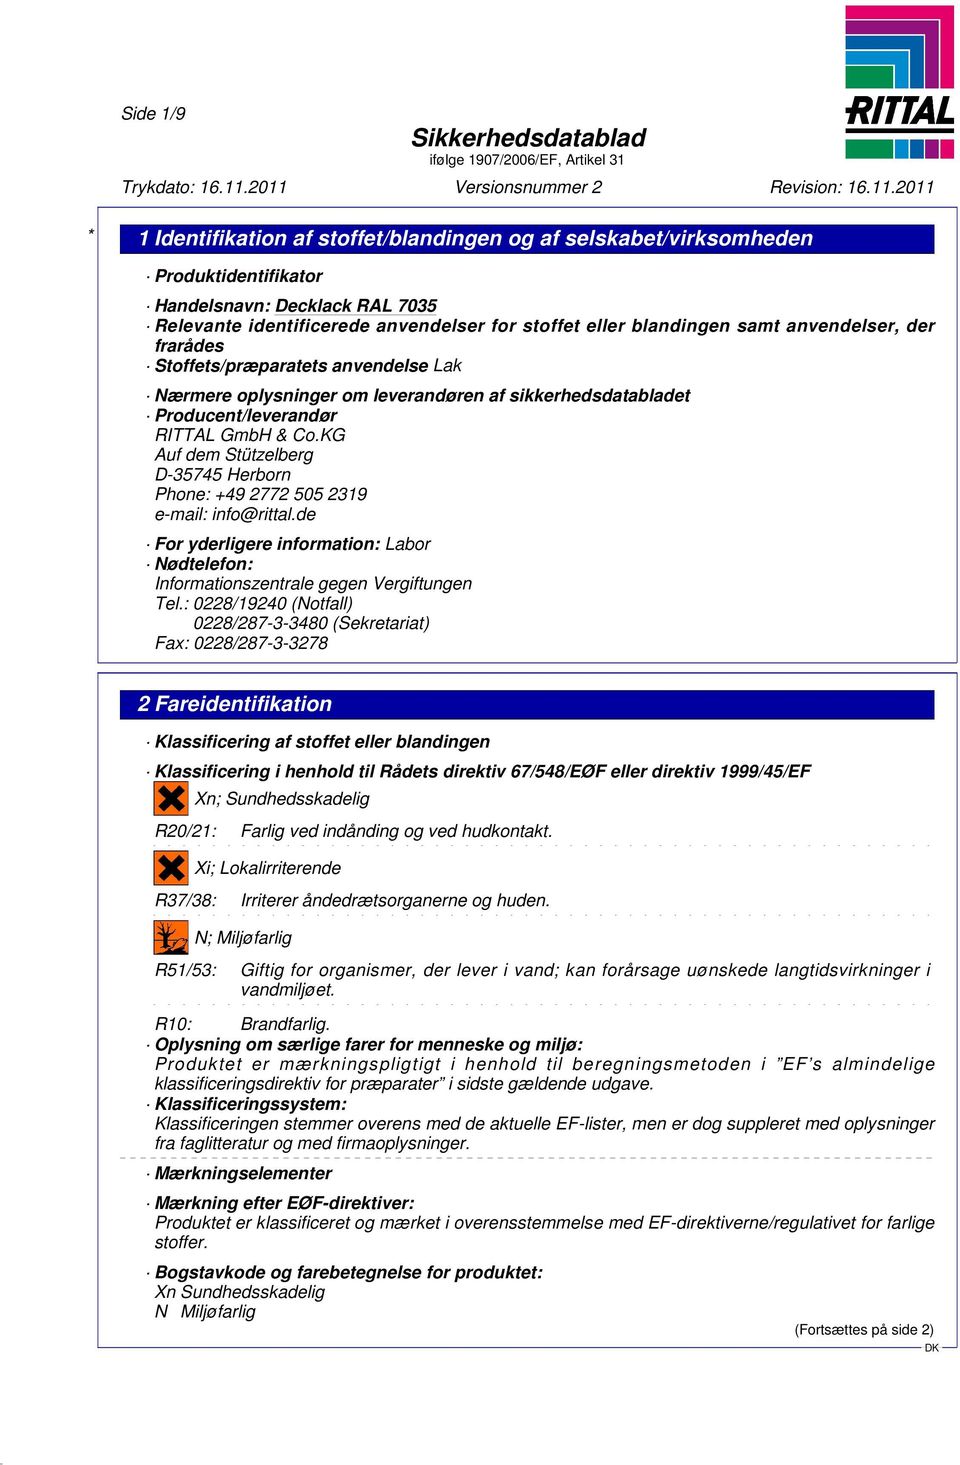 KG Auf dem Stützelberg D-35745 Herborn Phone: +49 2772 505 2319 e-mail: info@rittal.de For yderligere information: Labor Nødtelefon: Informationszentrale gegen Vergiftungen Tel.